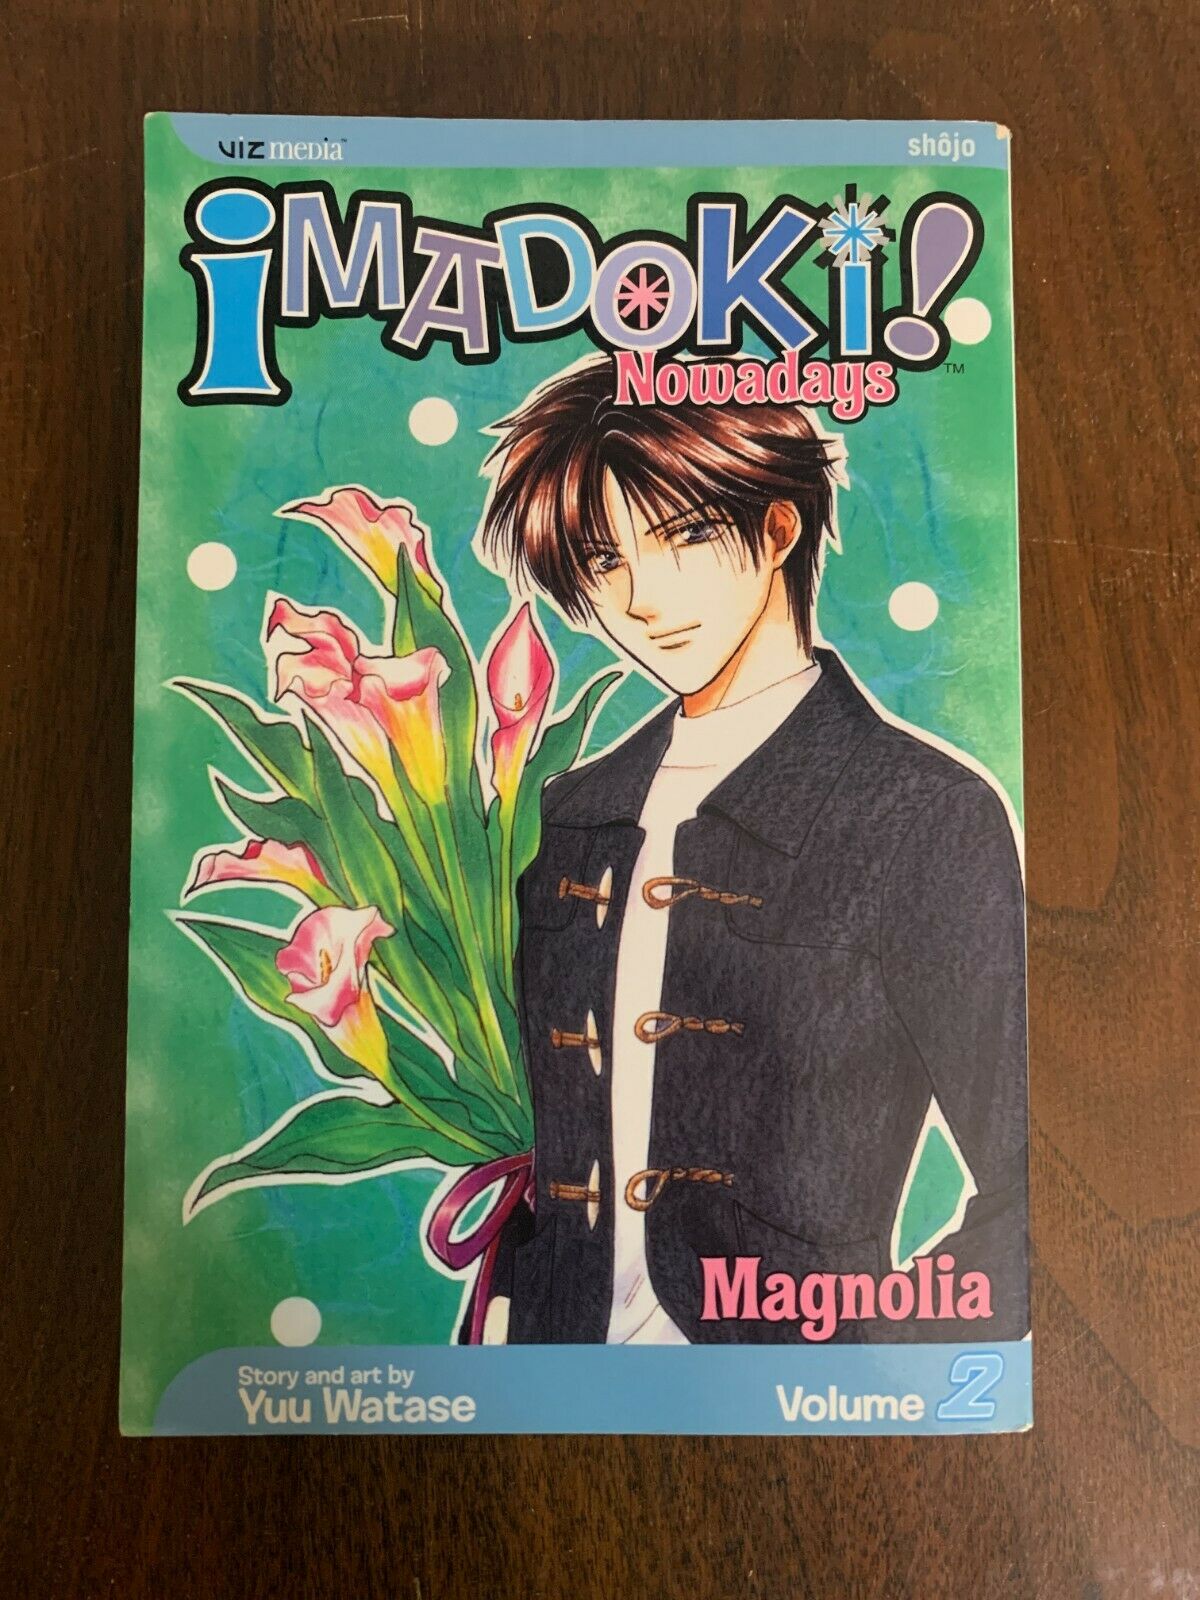 Imadoki! Nowadays Volume 2 - By Yuu Watase, Manga, Paperback, Viz Media (O1)